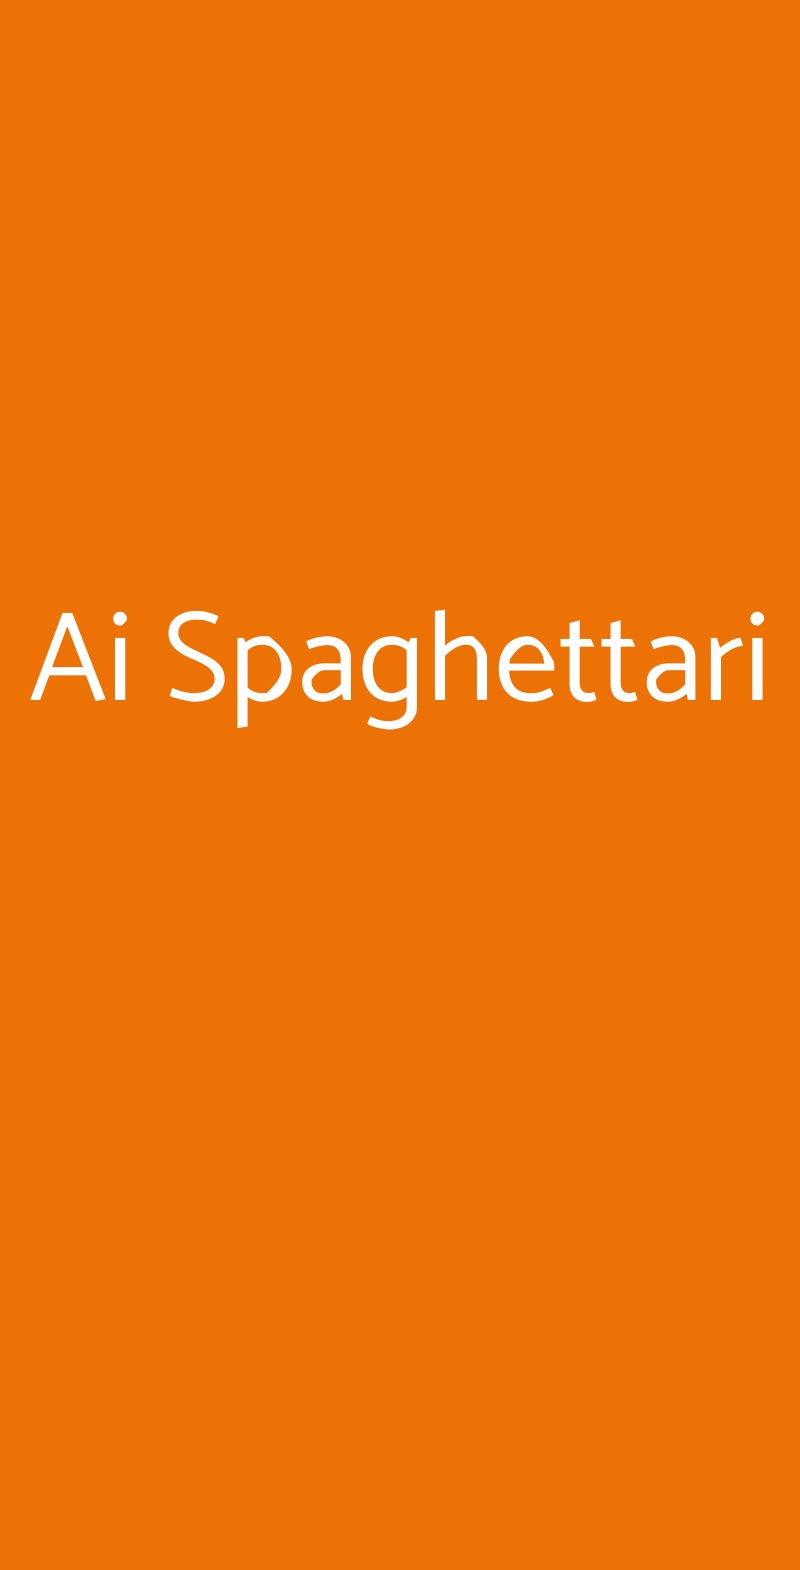 Ai Spaghettari Roma menù 1 pagina